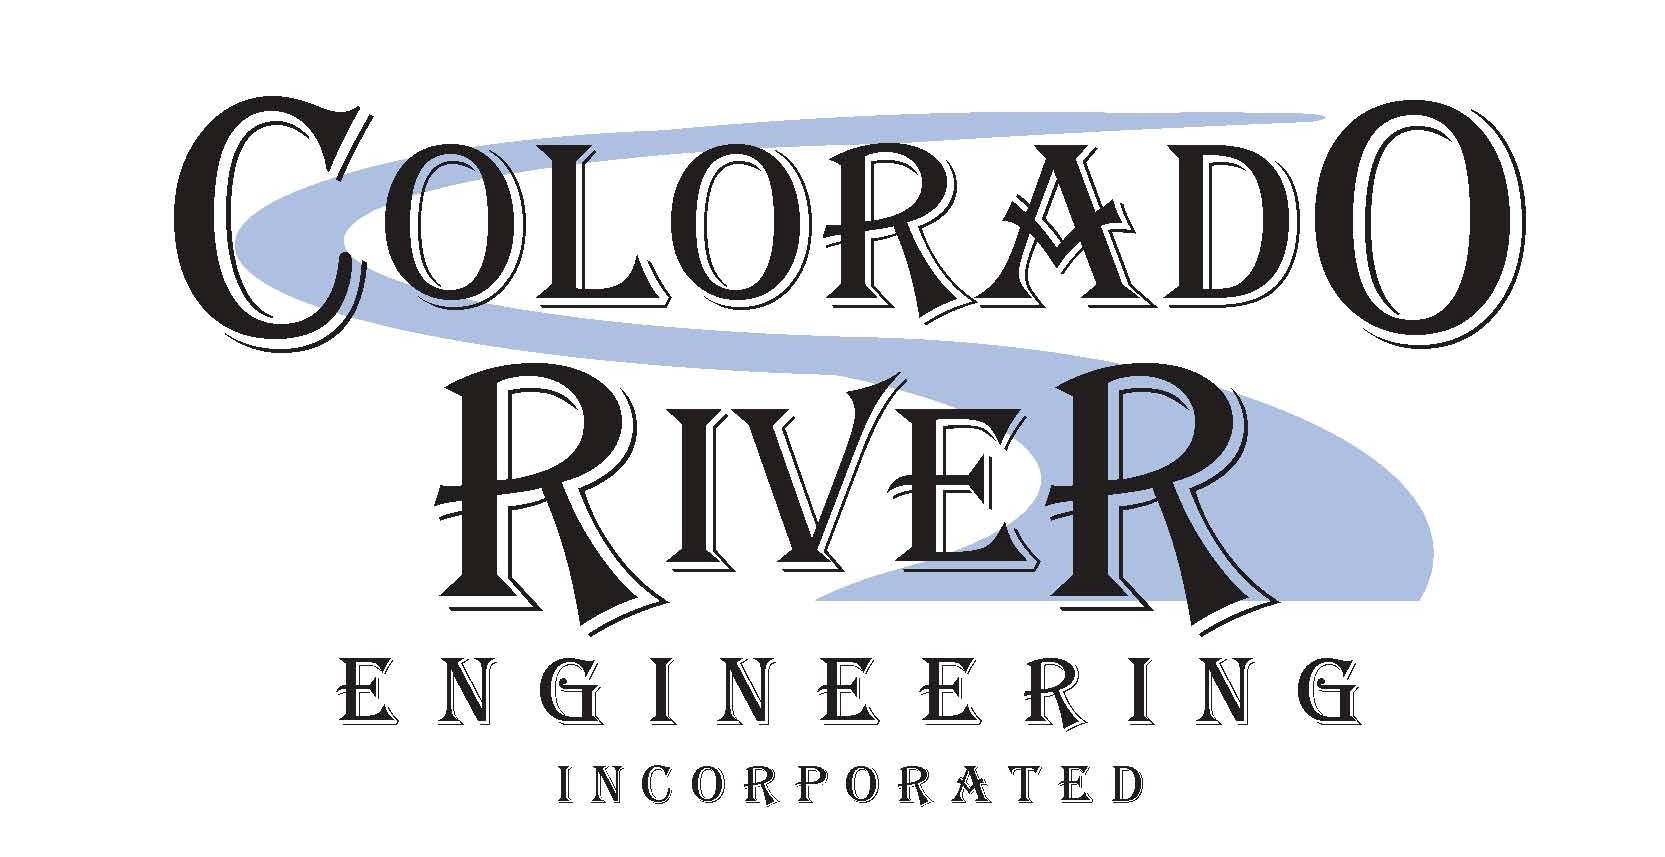 Colorado River Engineering logo 2008.jpg